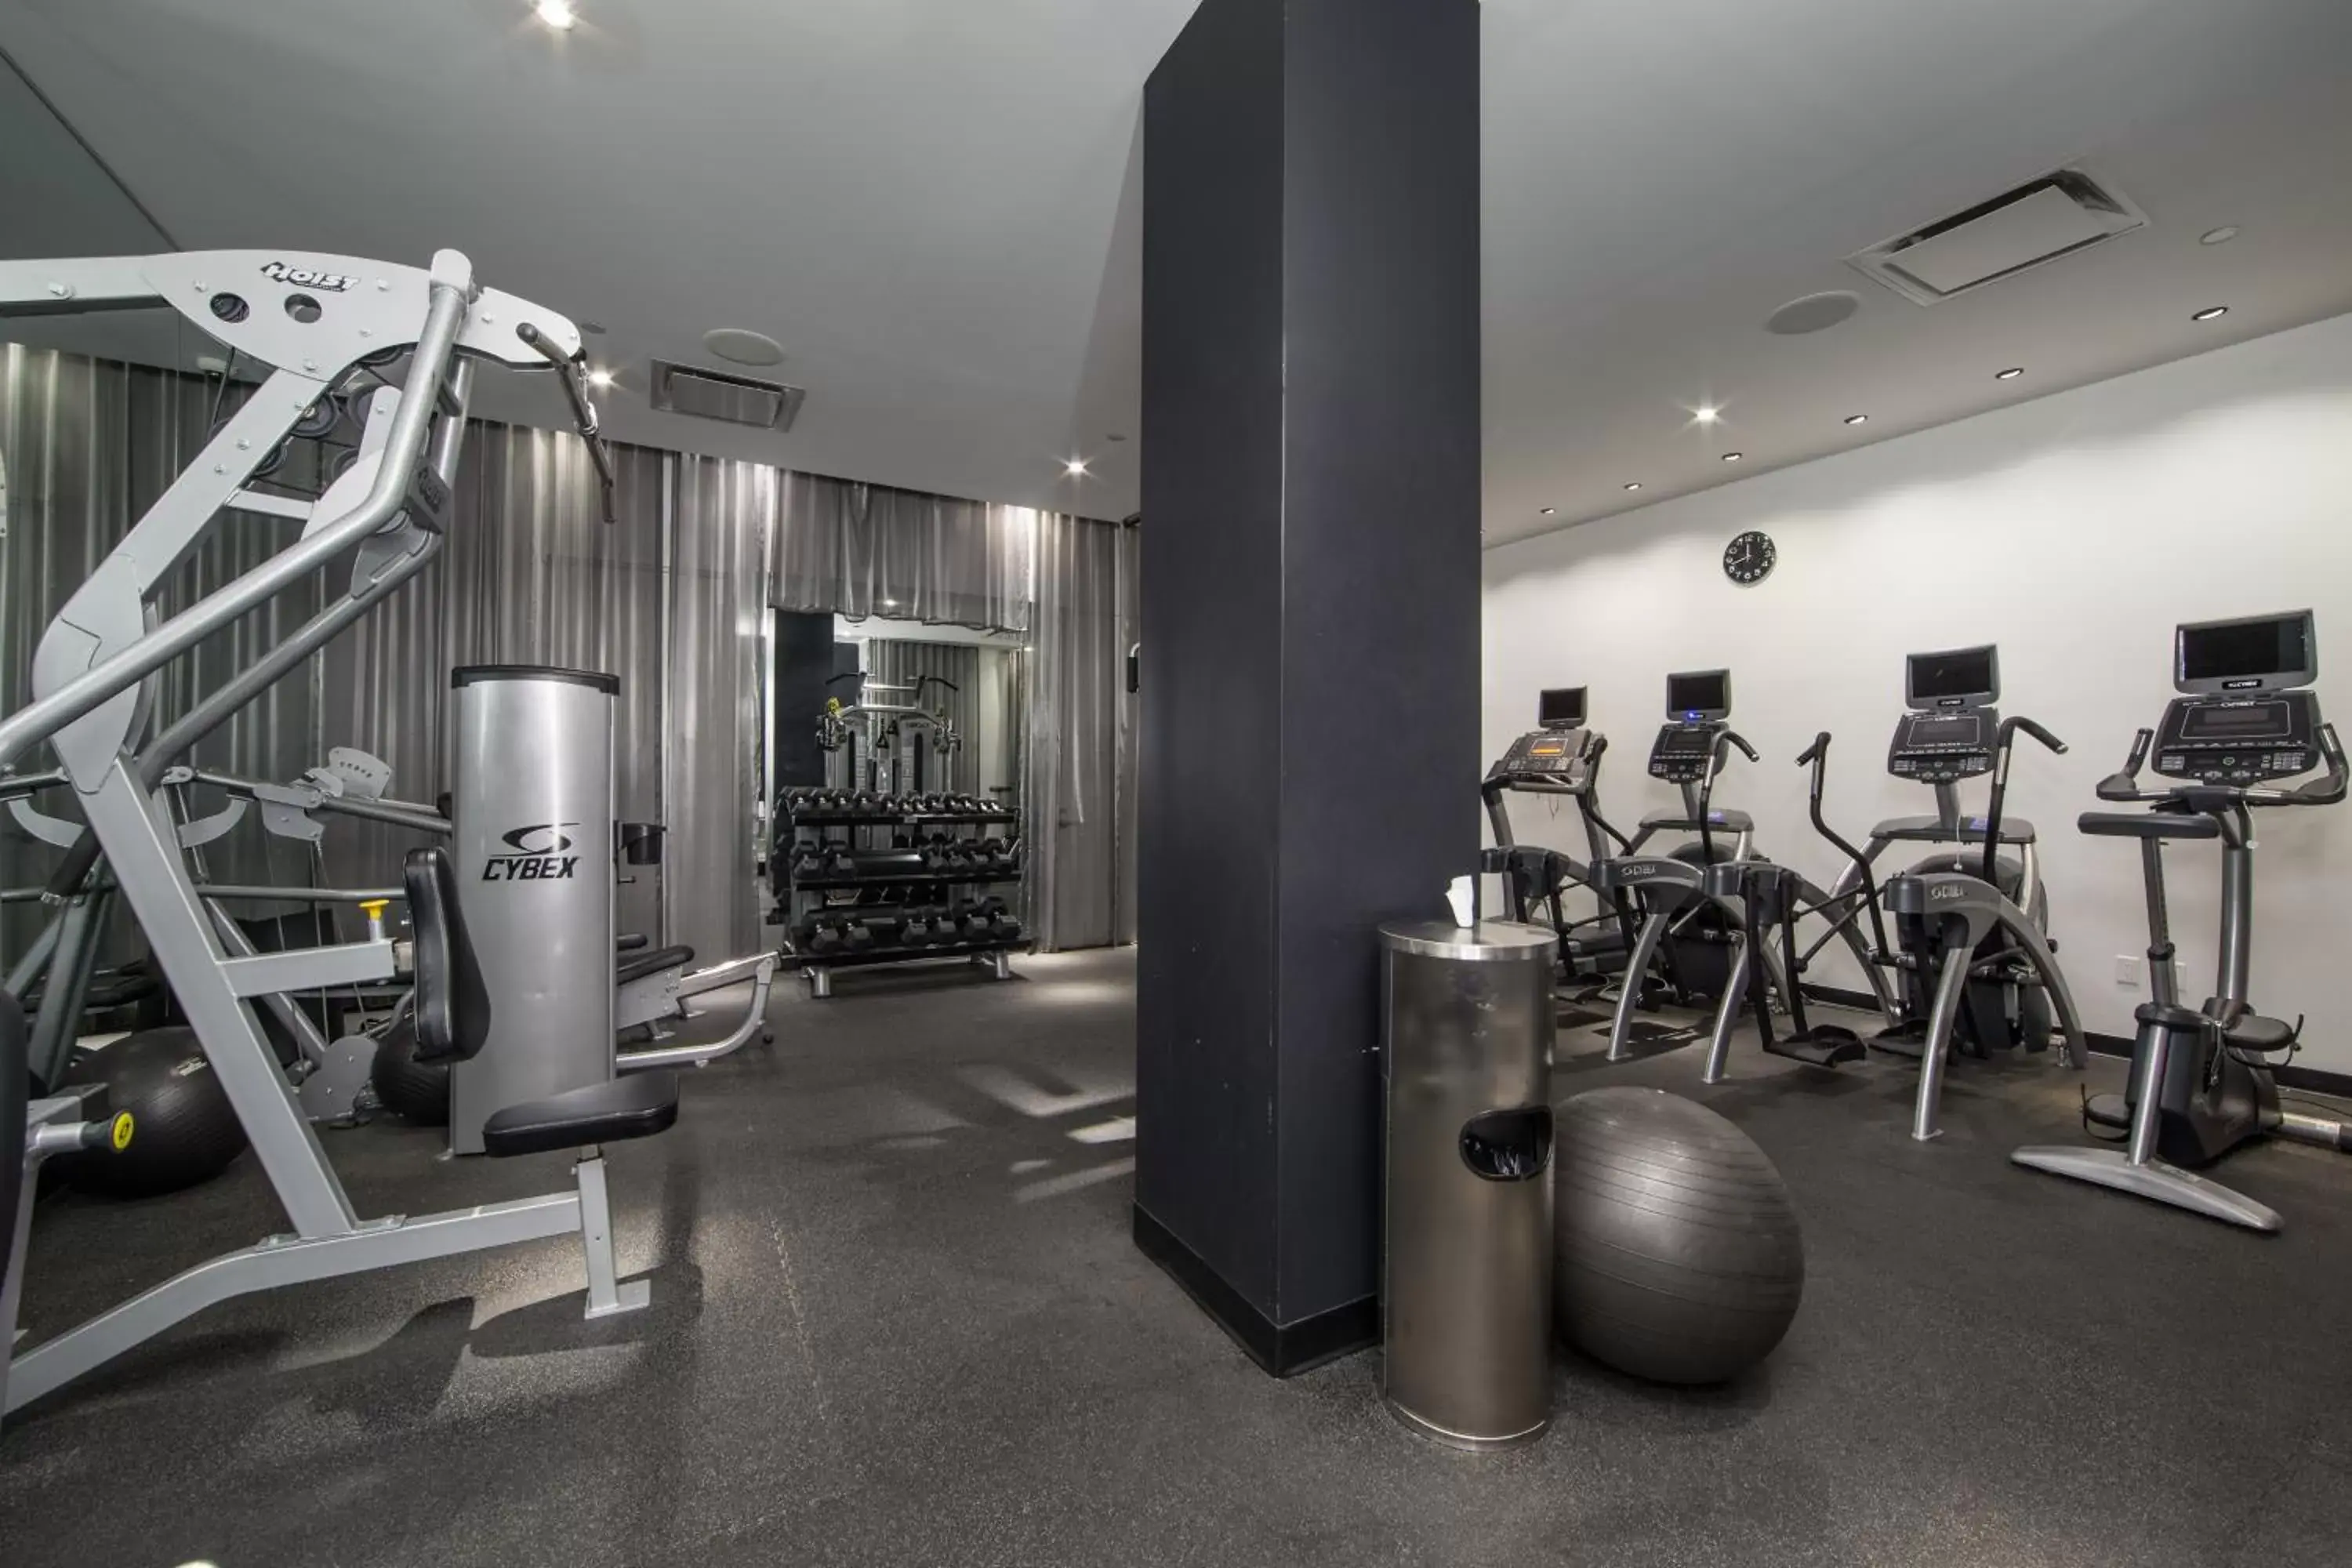 Fitness centre/facilities, Fitness Center/Facilities in NoMo SoHo